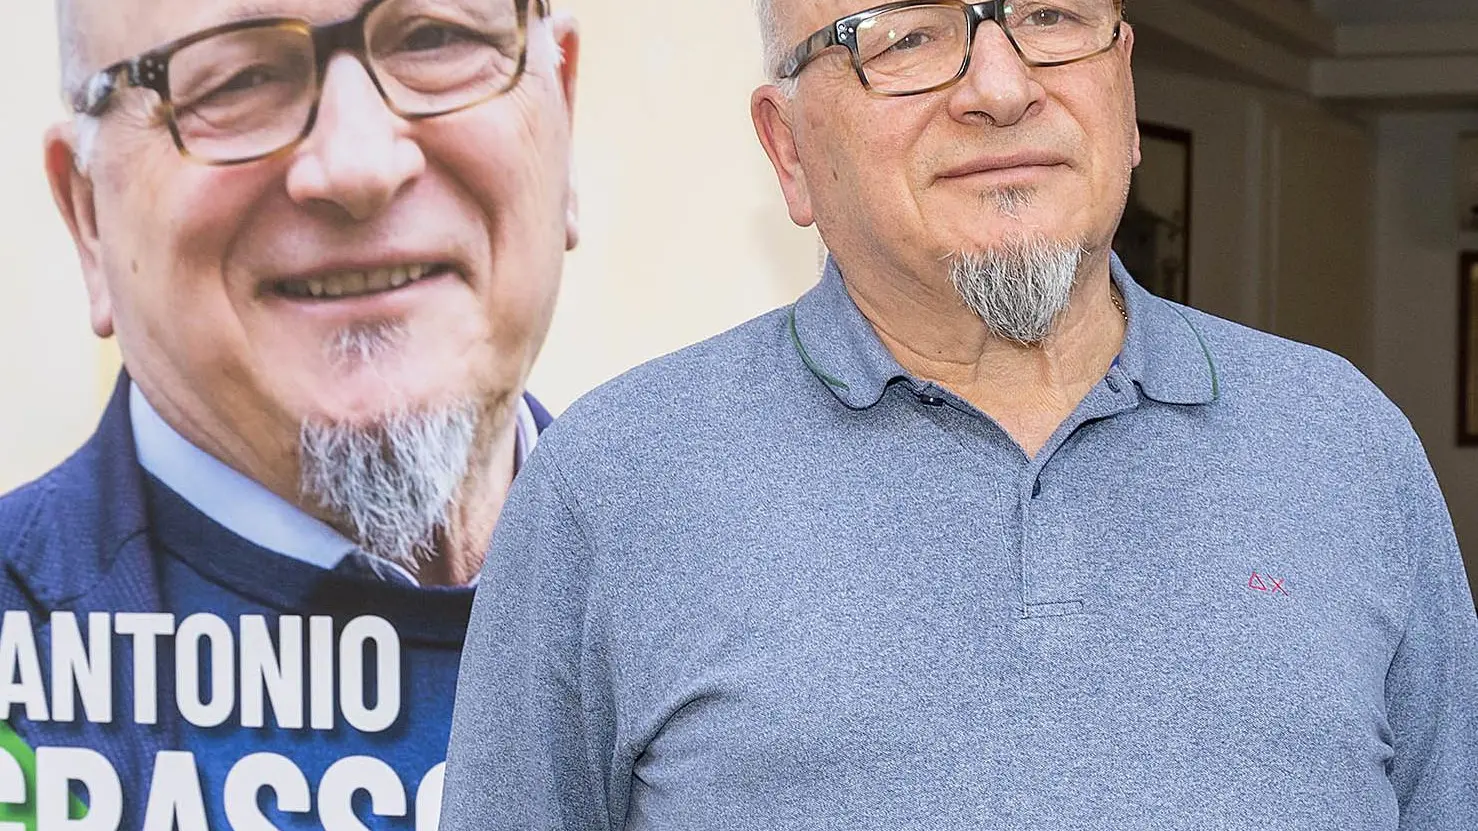 "Mandara si occupi del suo flop"  Grassotti attacca il rivale politico  Scontro fra esclusi dal ballottaggio